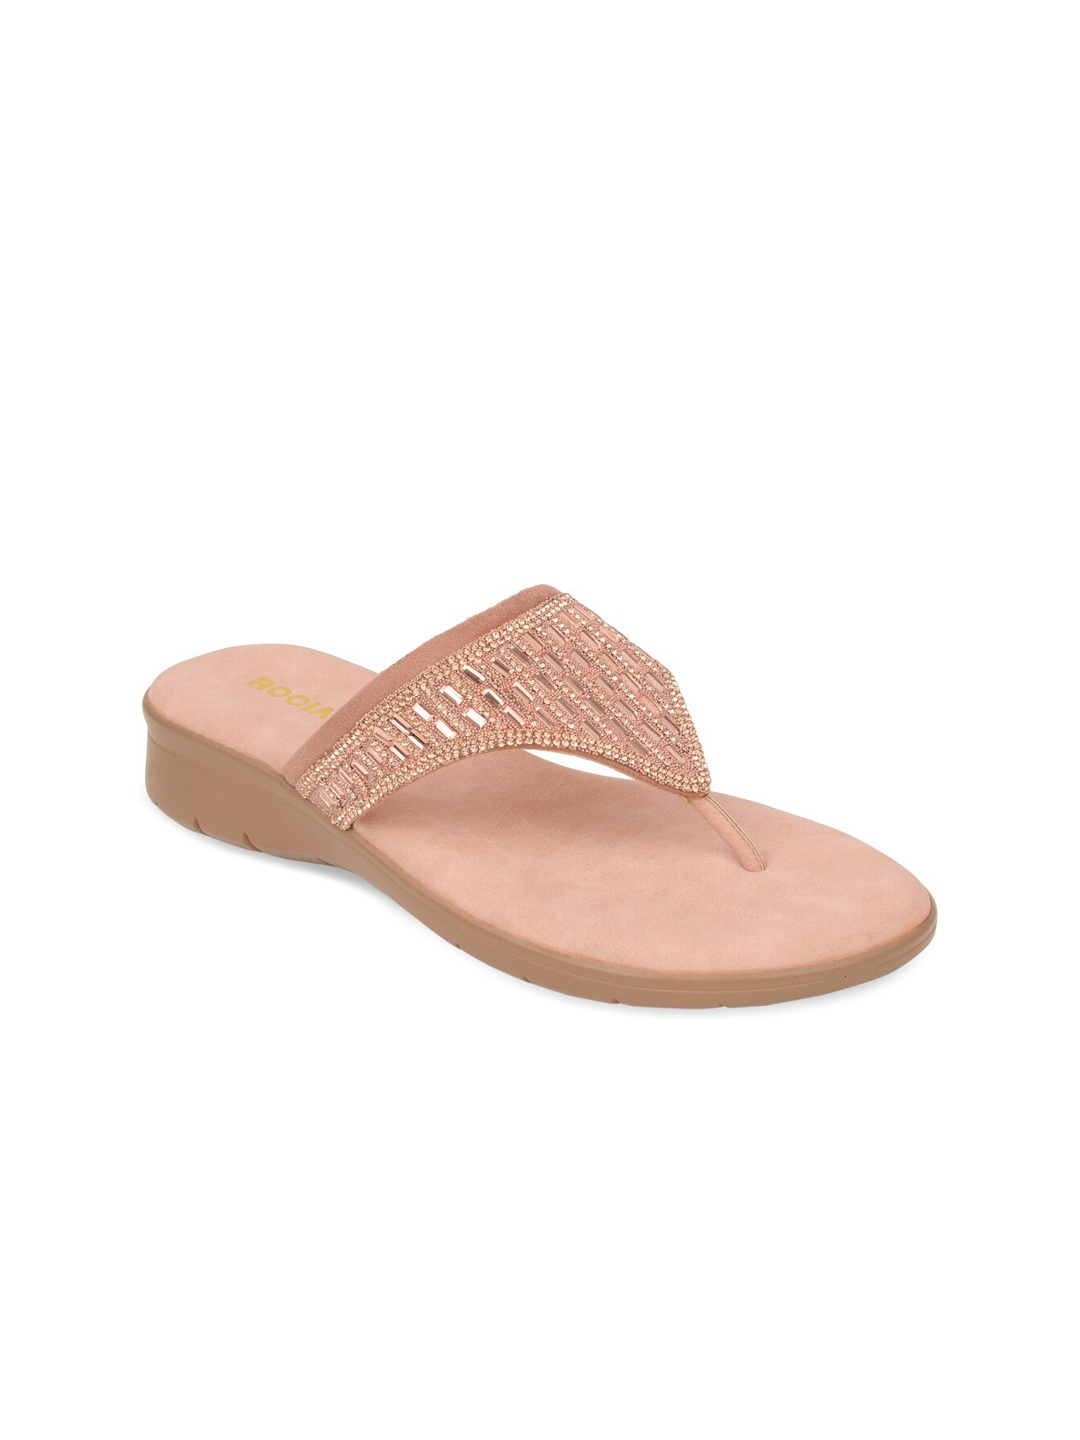 

Rocia Rose Gold-Toned Embellished Comfort Sandals